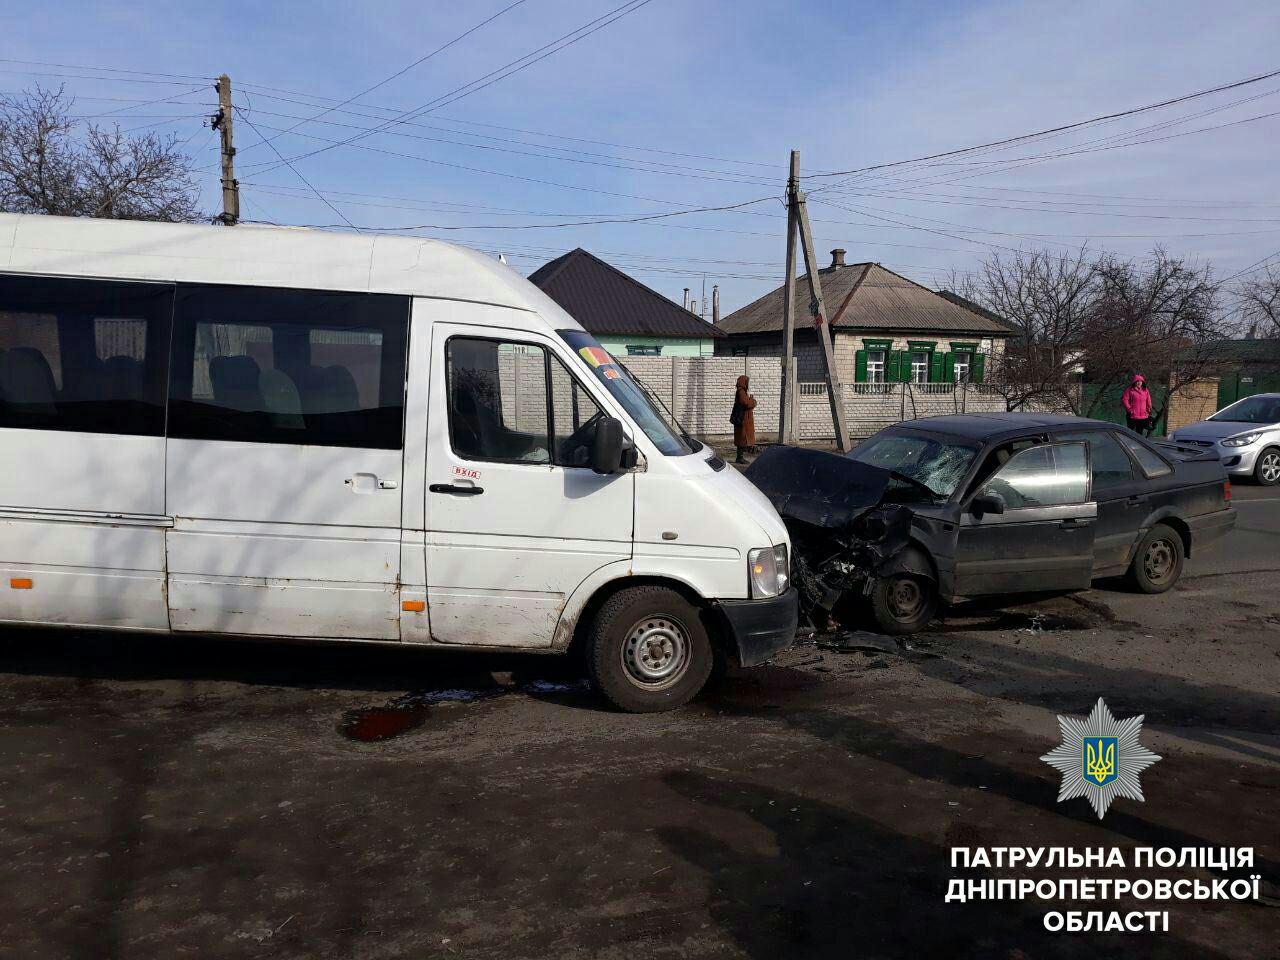 Новость - События - Жуткая авария с маршруткой: пострадали 7 человек, среди них дети